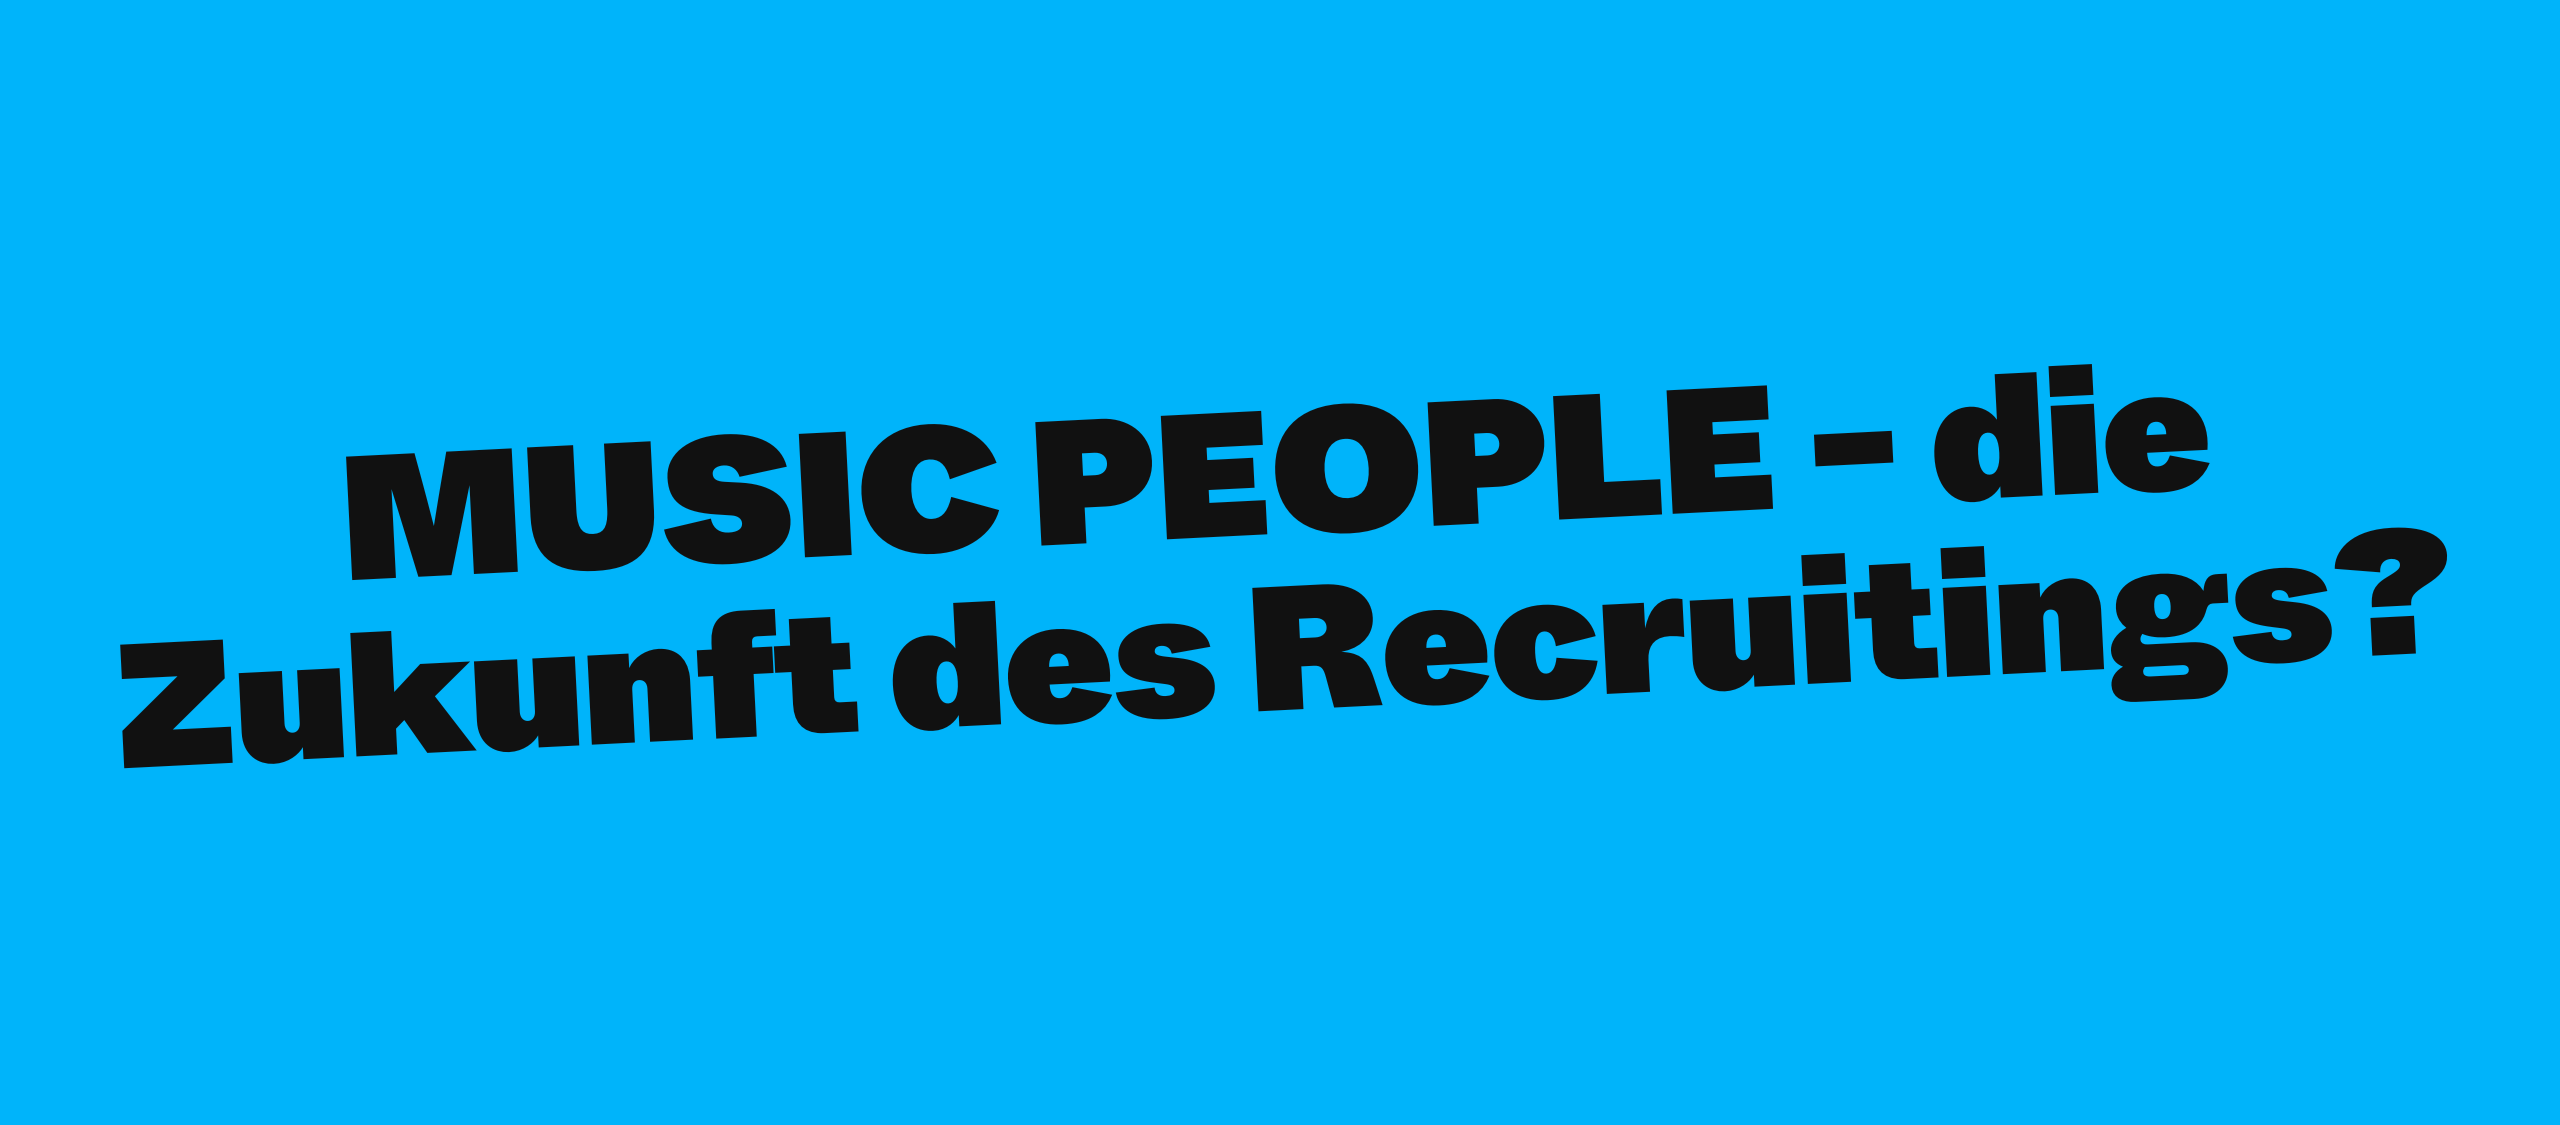 MUSIC PEOPLE - die Zukunft des Recruitings?